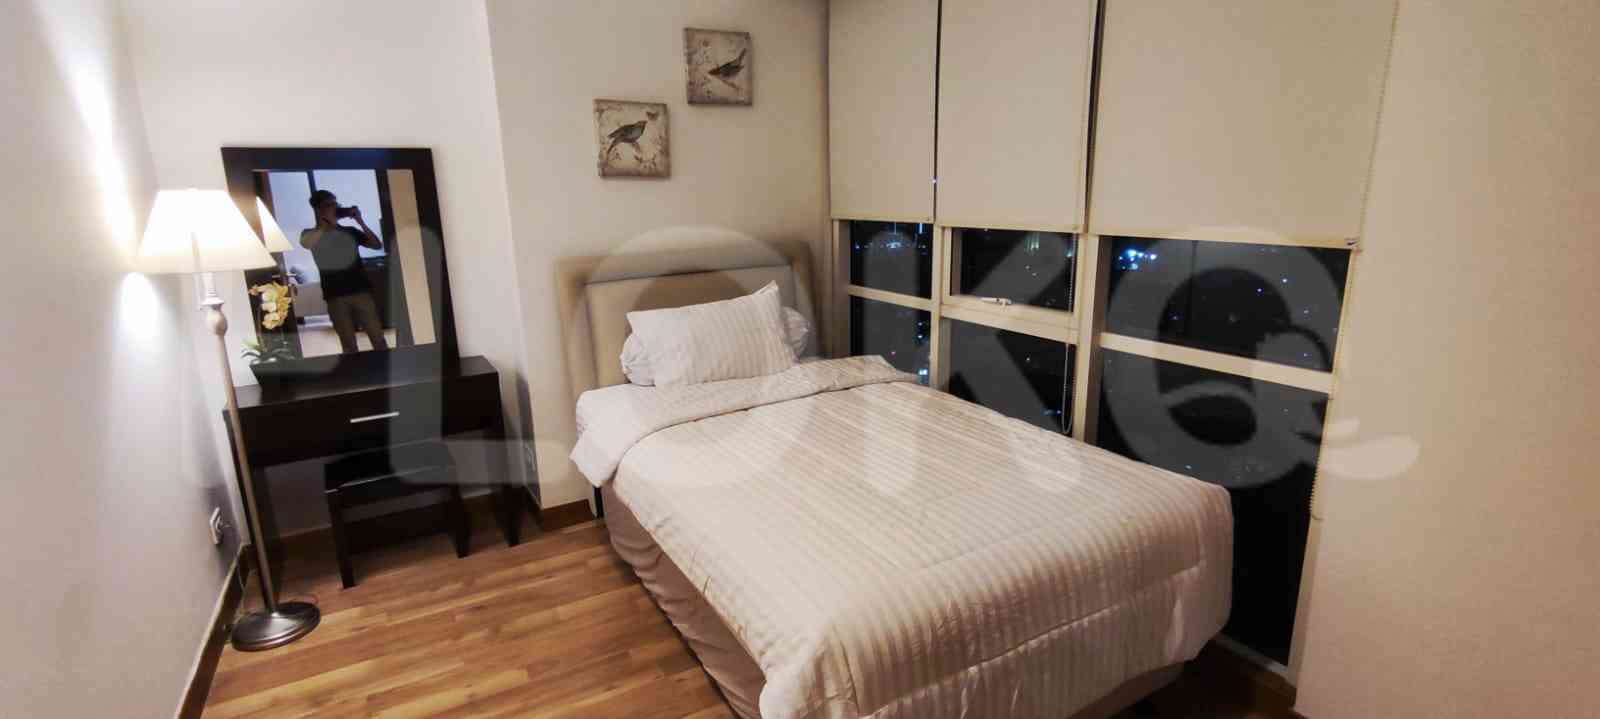 3 Bedroom on 26th Floor for Rent in Sky Garden - fse75a 2